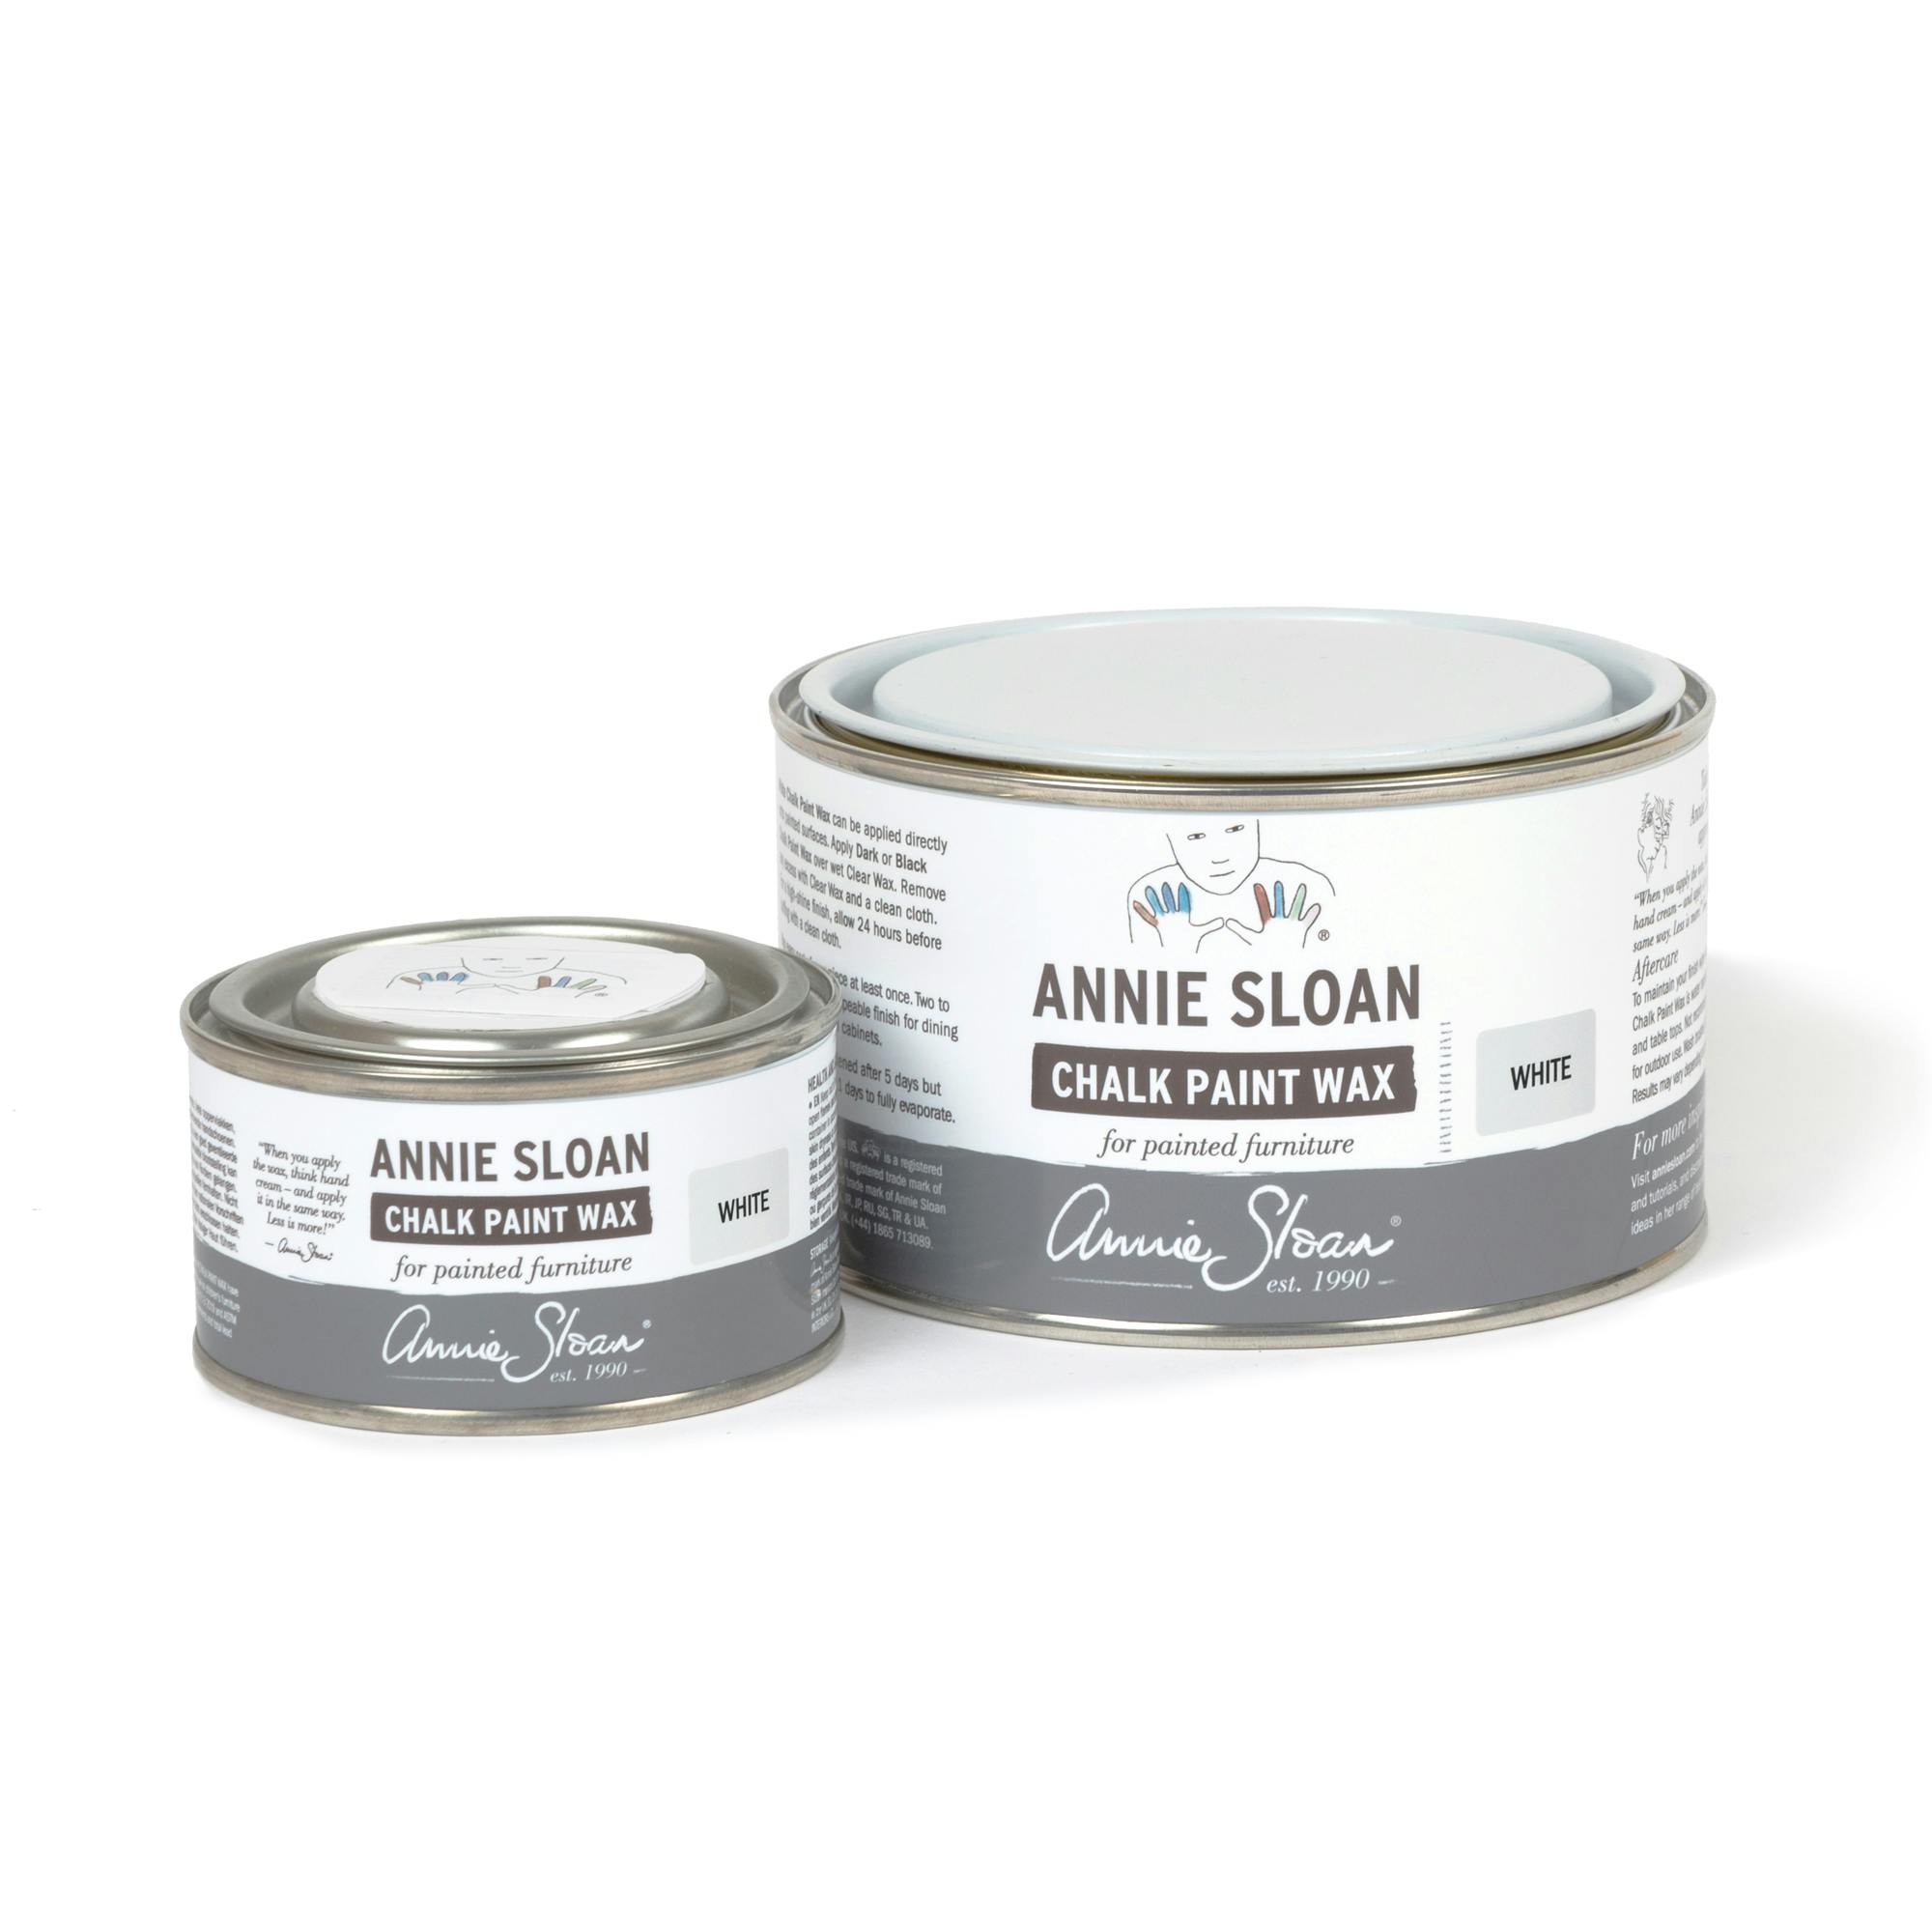 Annie Sloan White wax